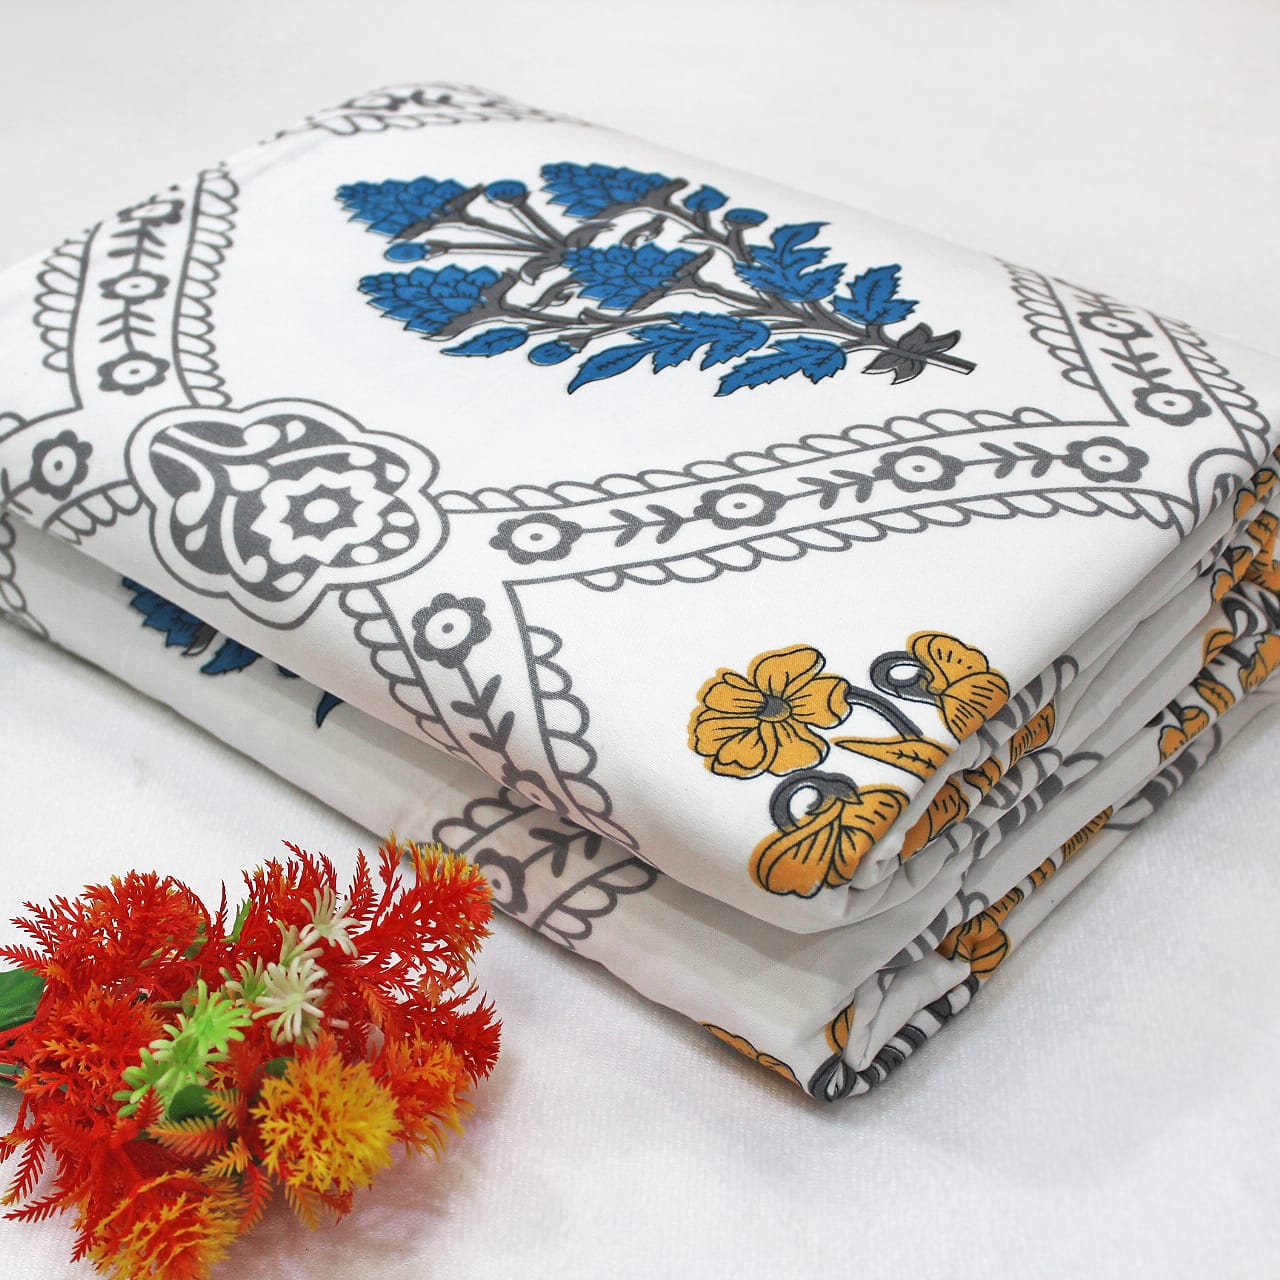 Microfiber Floral Reversible AC Dohar Blanket, Blue